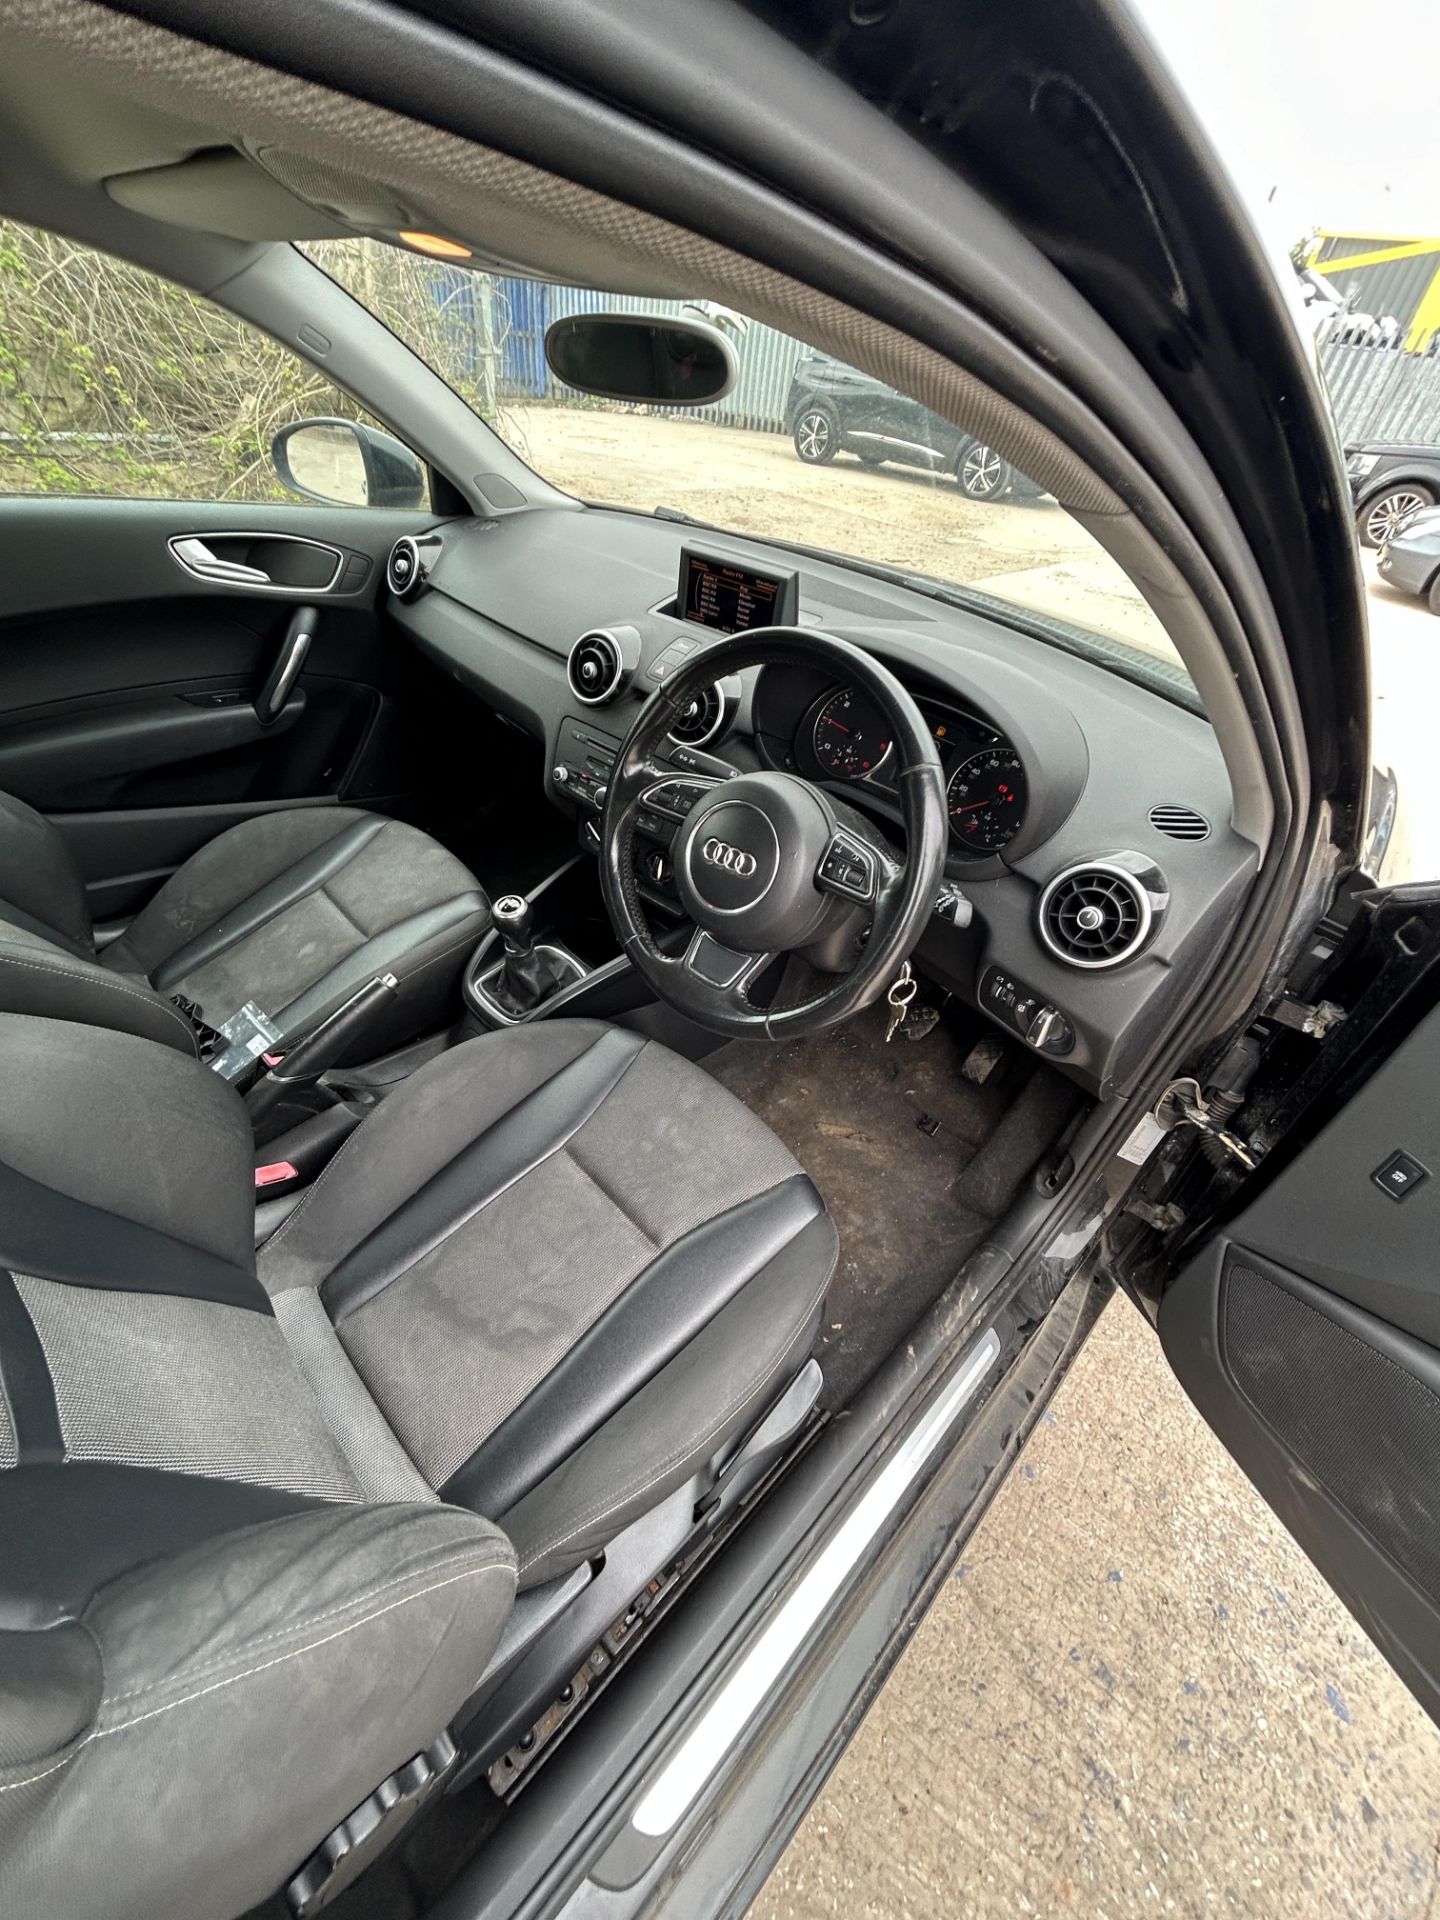 Audi A1 Sport TDI Diesel 3 Door Hatchback | WG61 USJ | 122,681 Miles - Image 12 of 15